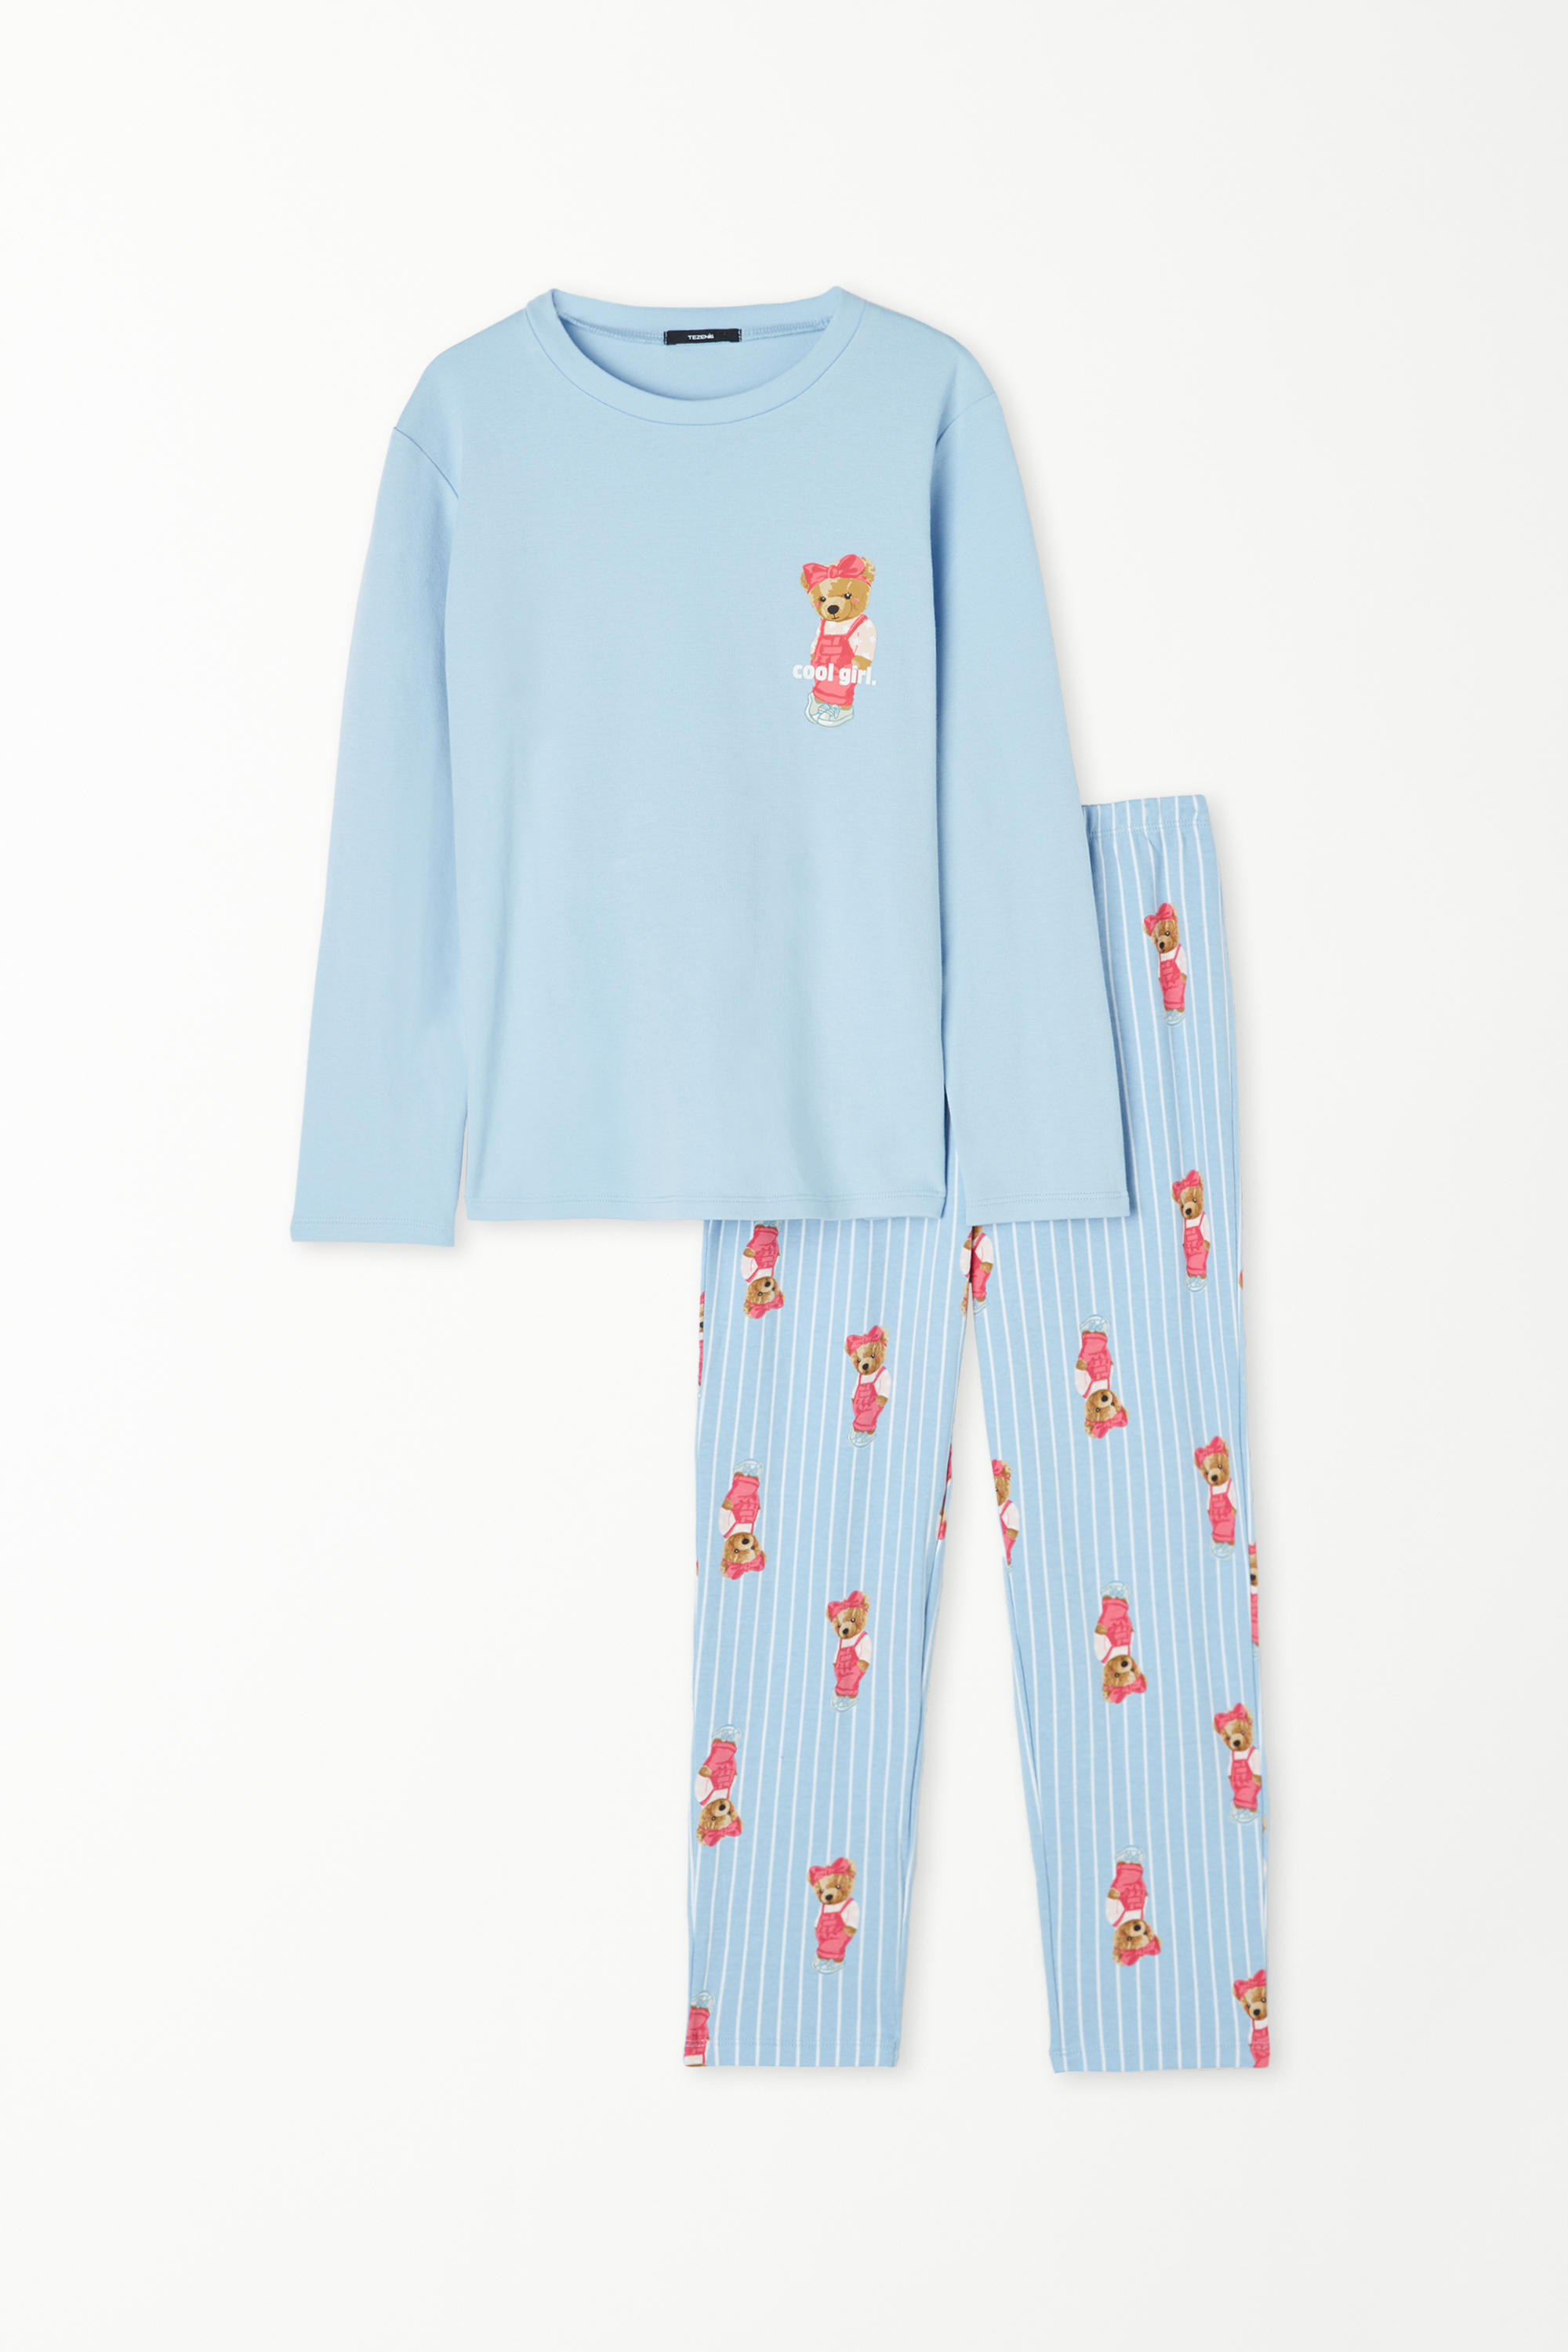 Pyjama Long Fille Coton Imprimé Ourson